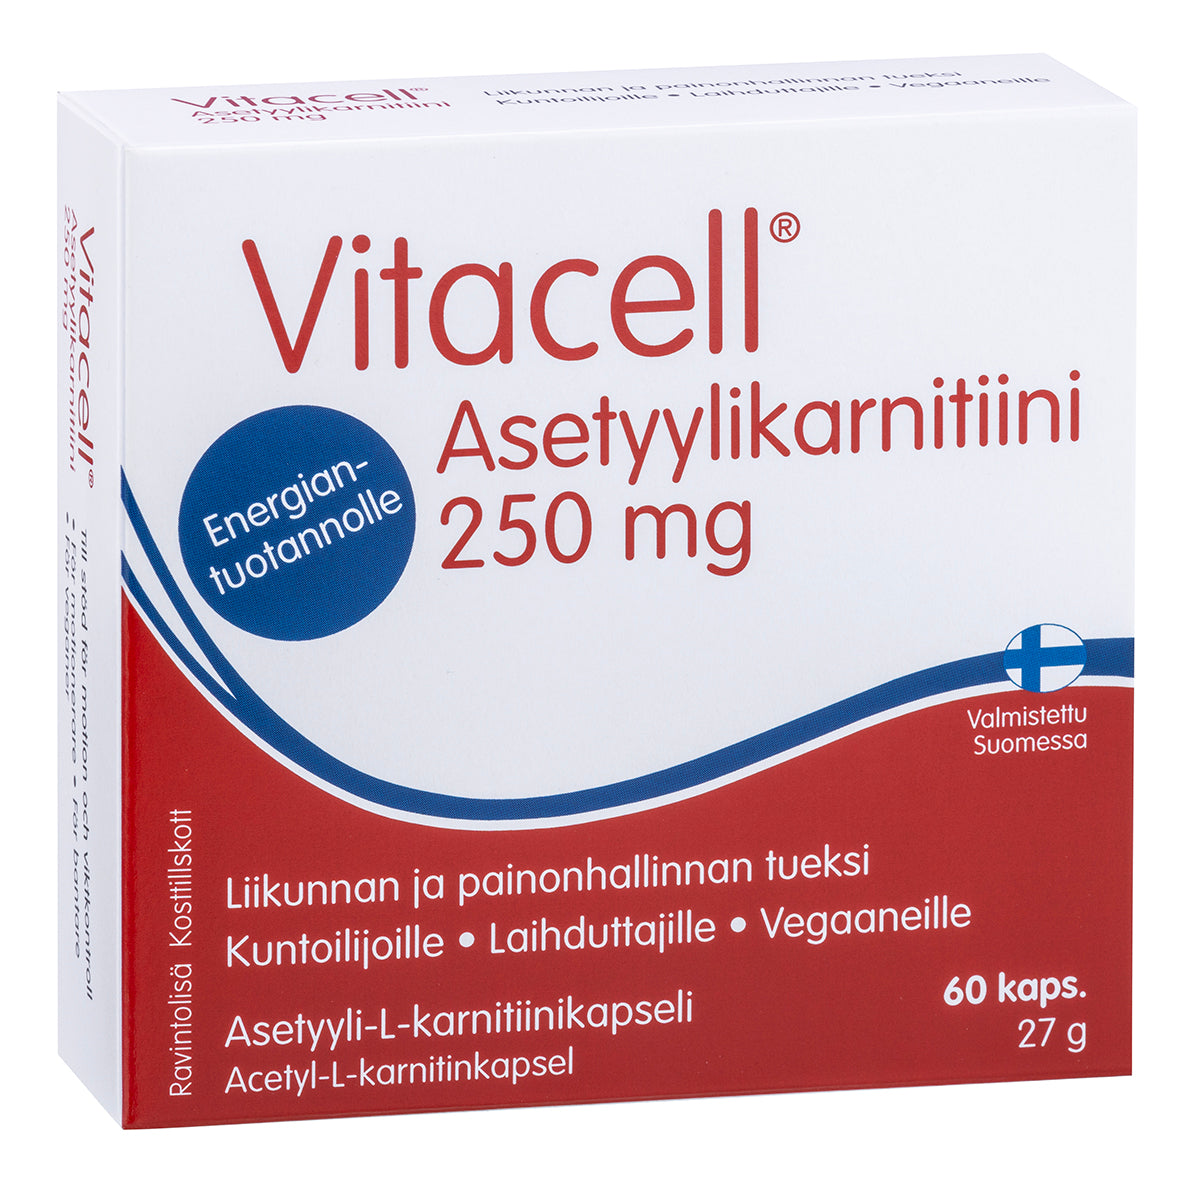 Vitacell Asetyylikarnitiini 250 mg 60 kaps.